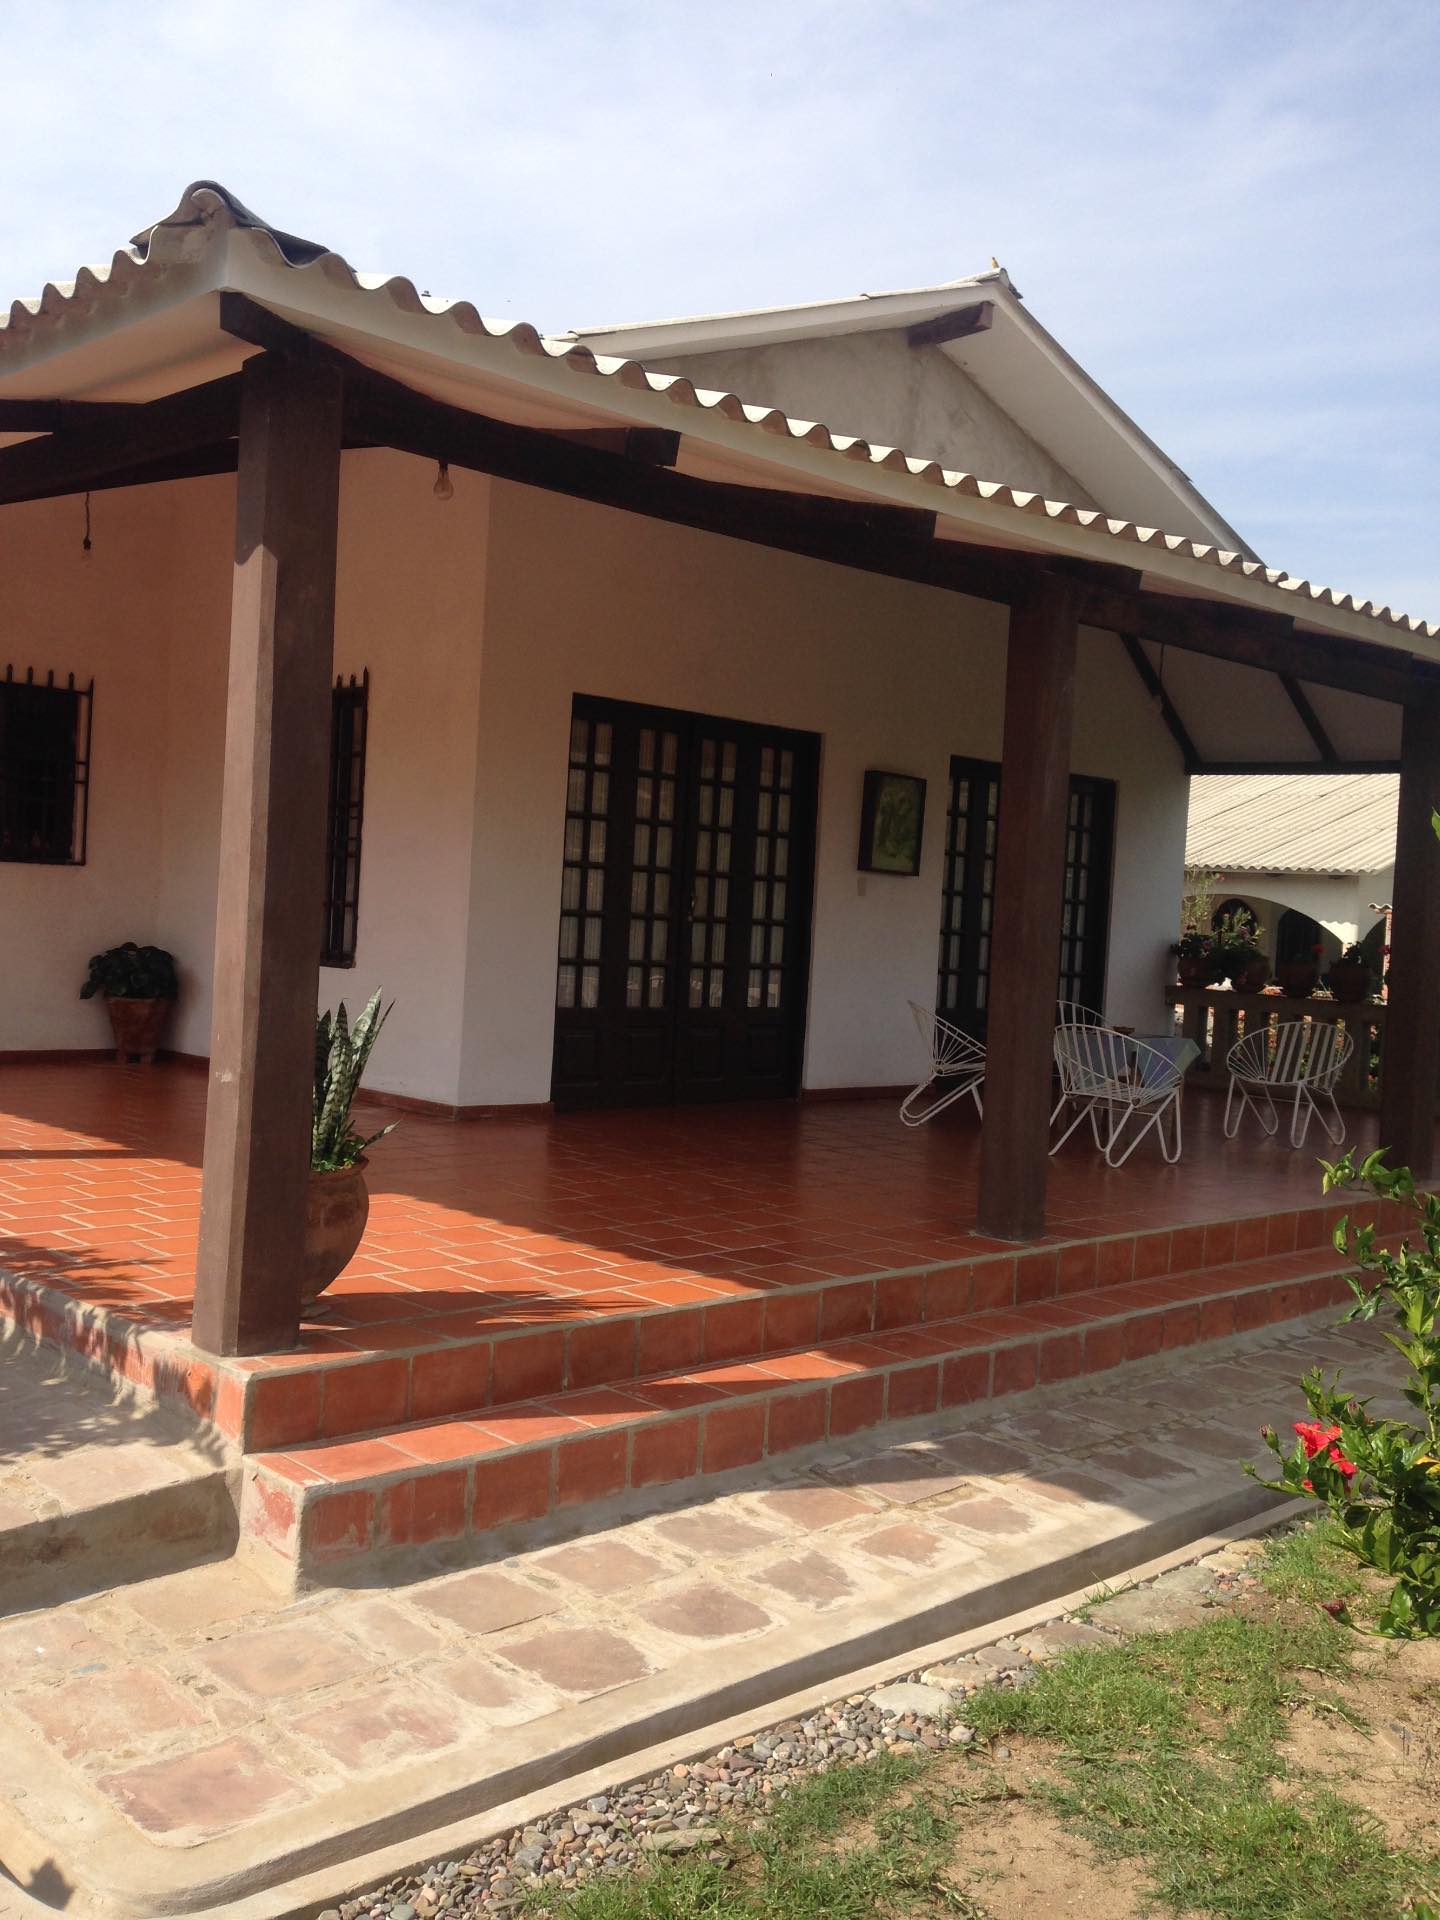 Casa en VentaMolle Mayu a 20 minutos de Sucre camino al aeropuerto de Alcantati del peaje de Cochis 2 km. A la derecha hacia Totacoa Foto 7